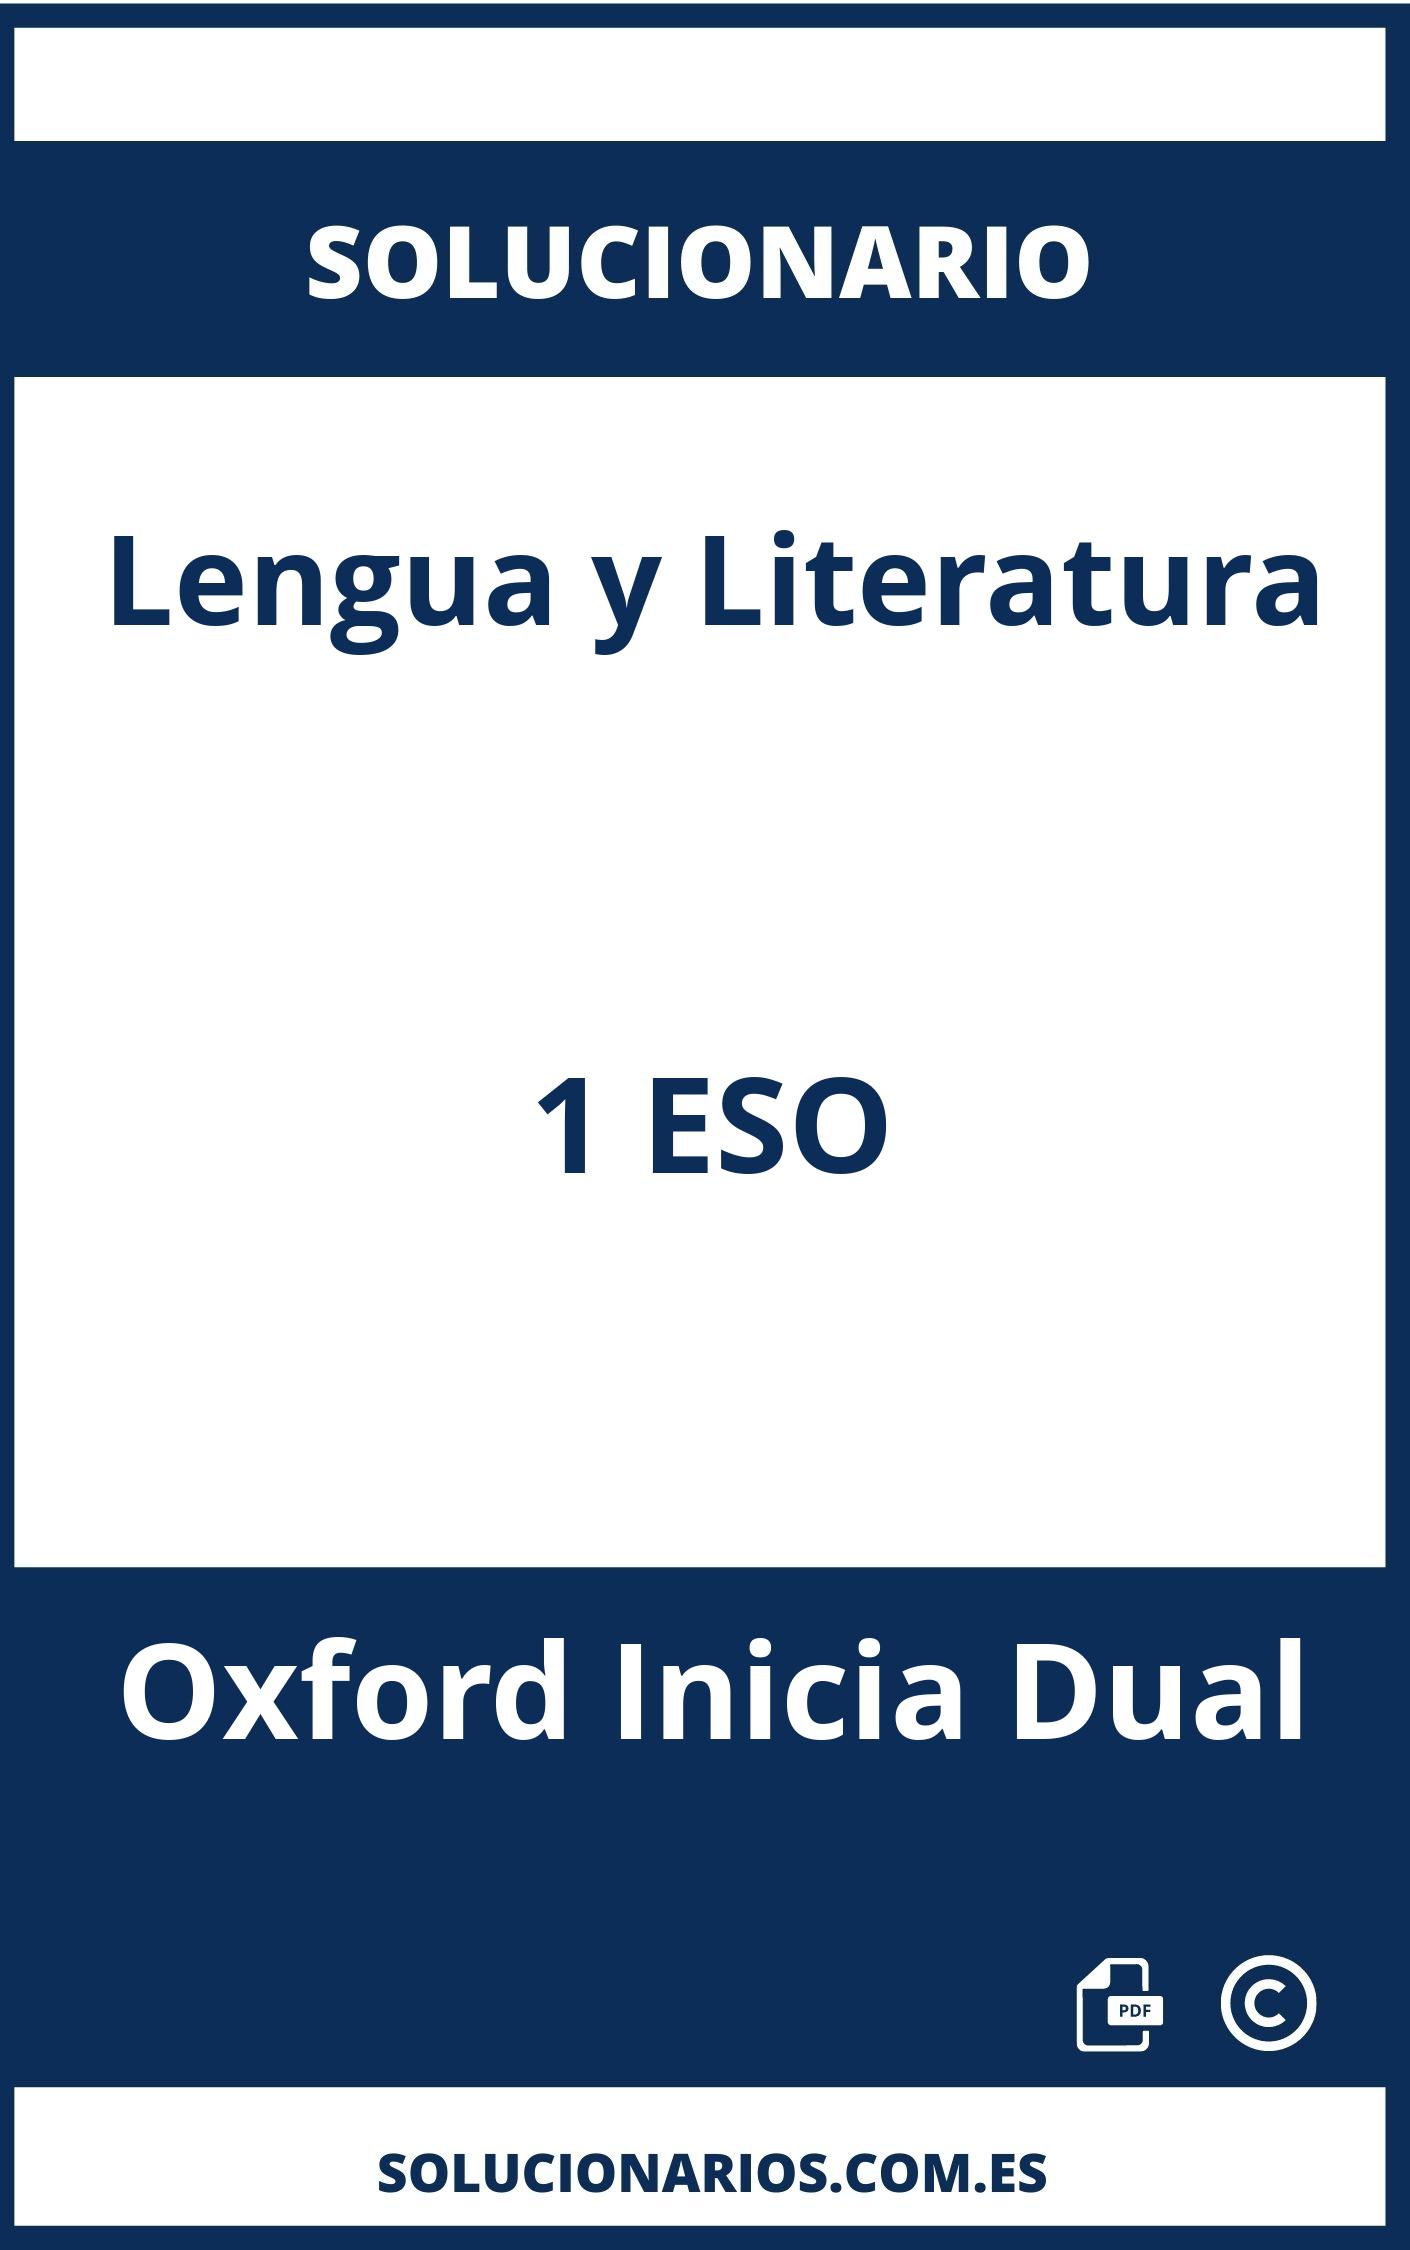 Solucionario Lengua y Literatura 1 ESO Oxford Inicia Dual